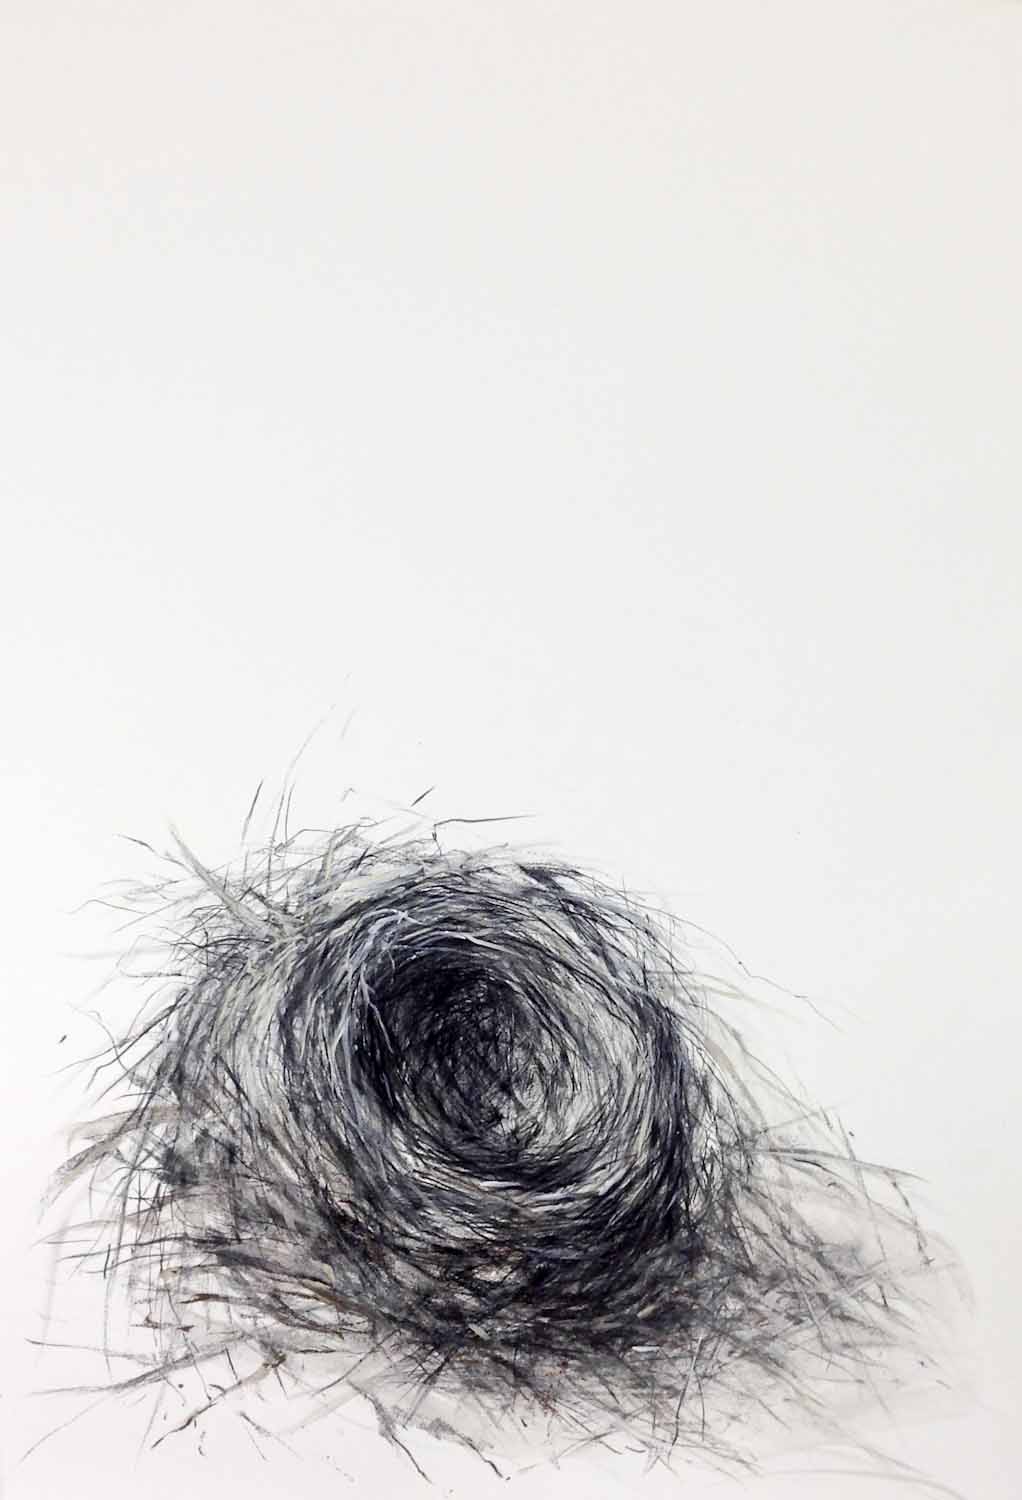 "le nid d'oiseau" (The Empty Nest; November 13, 2015)